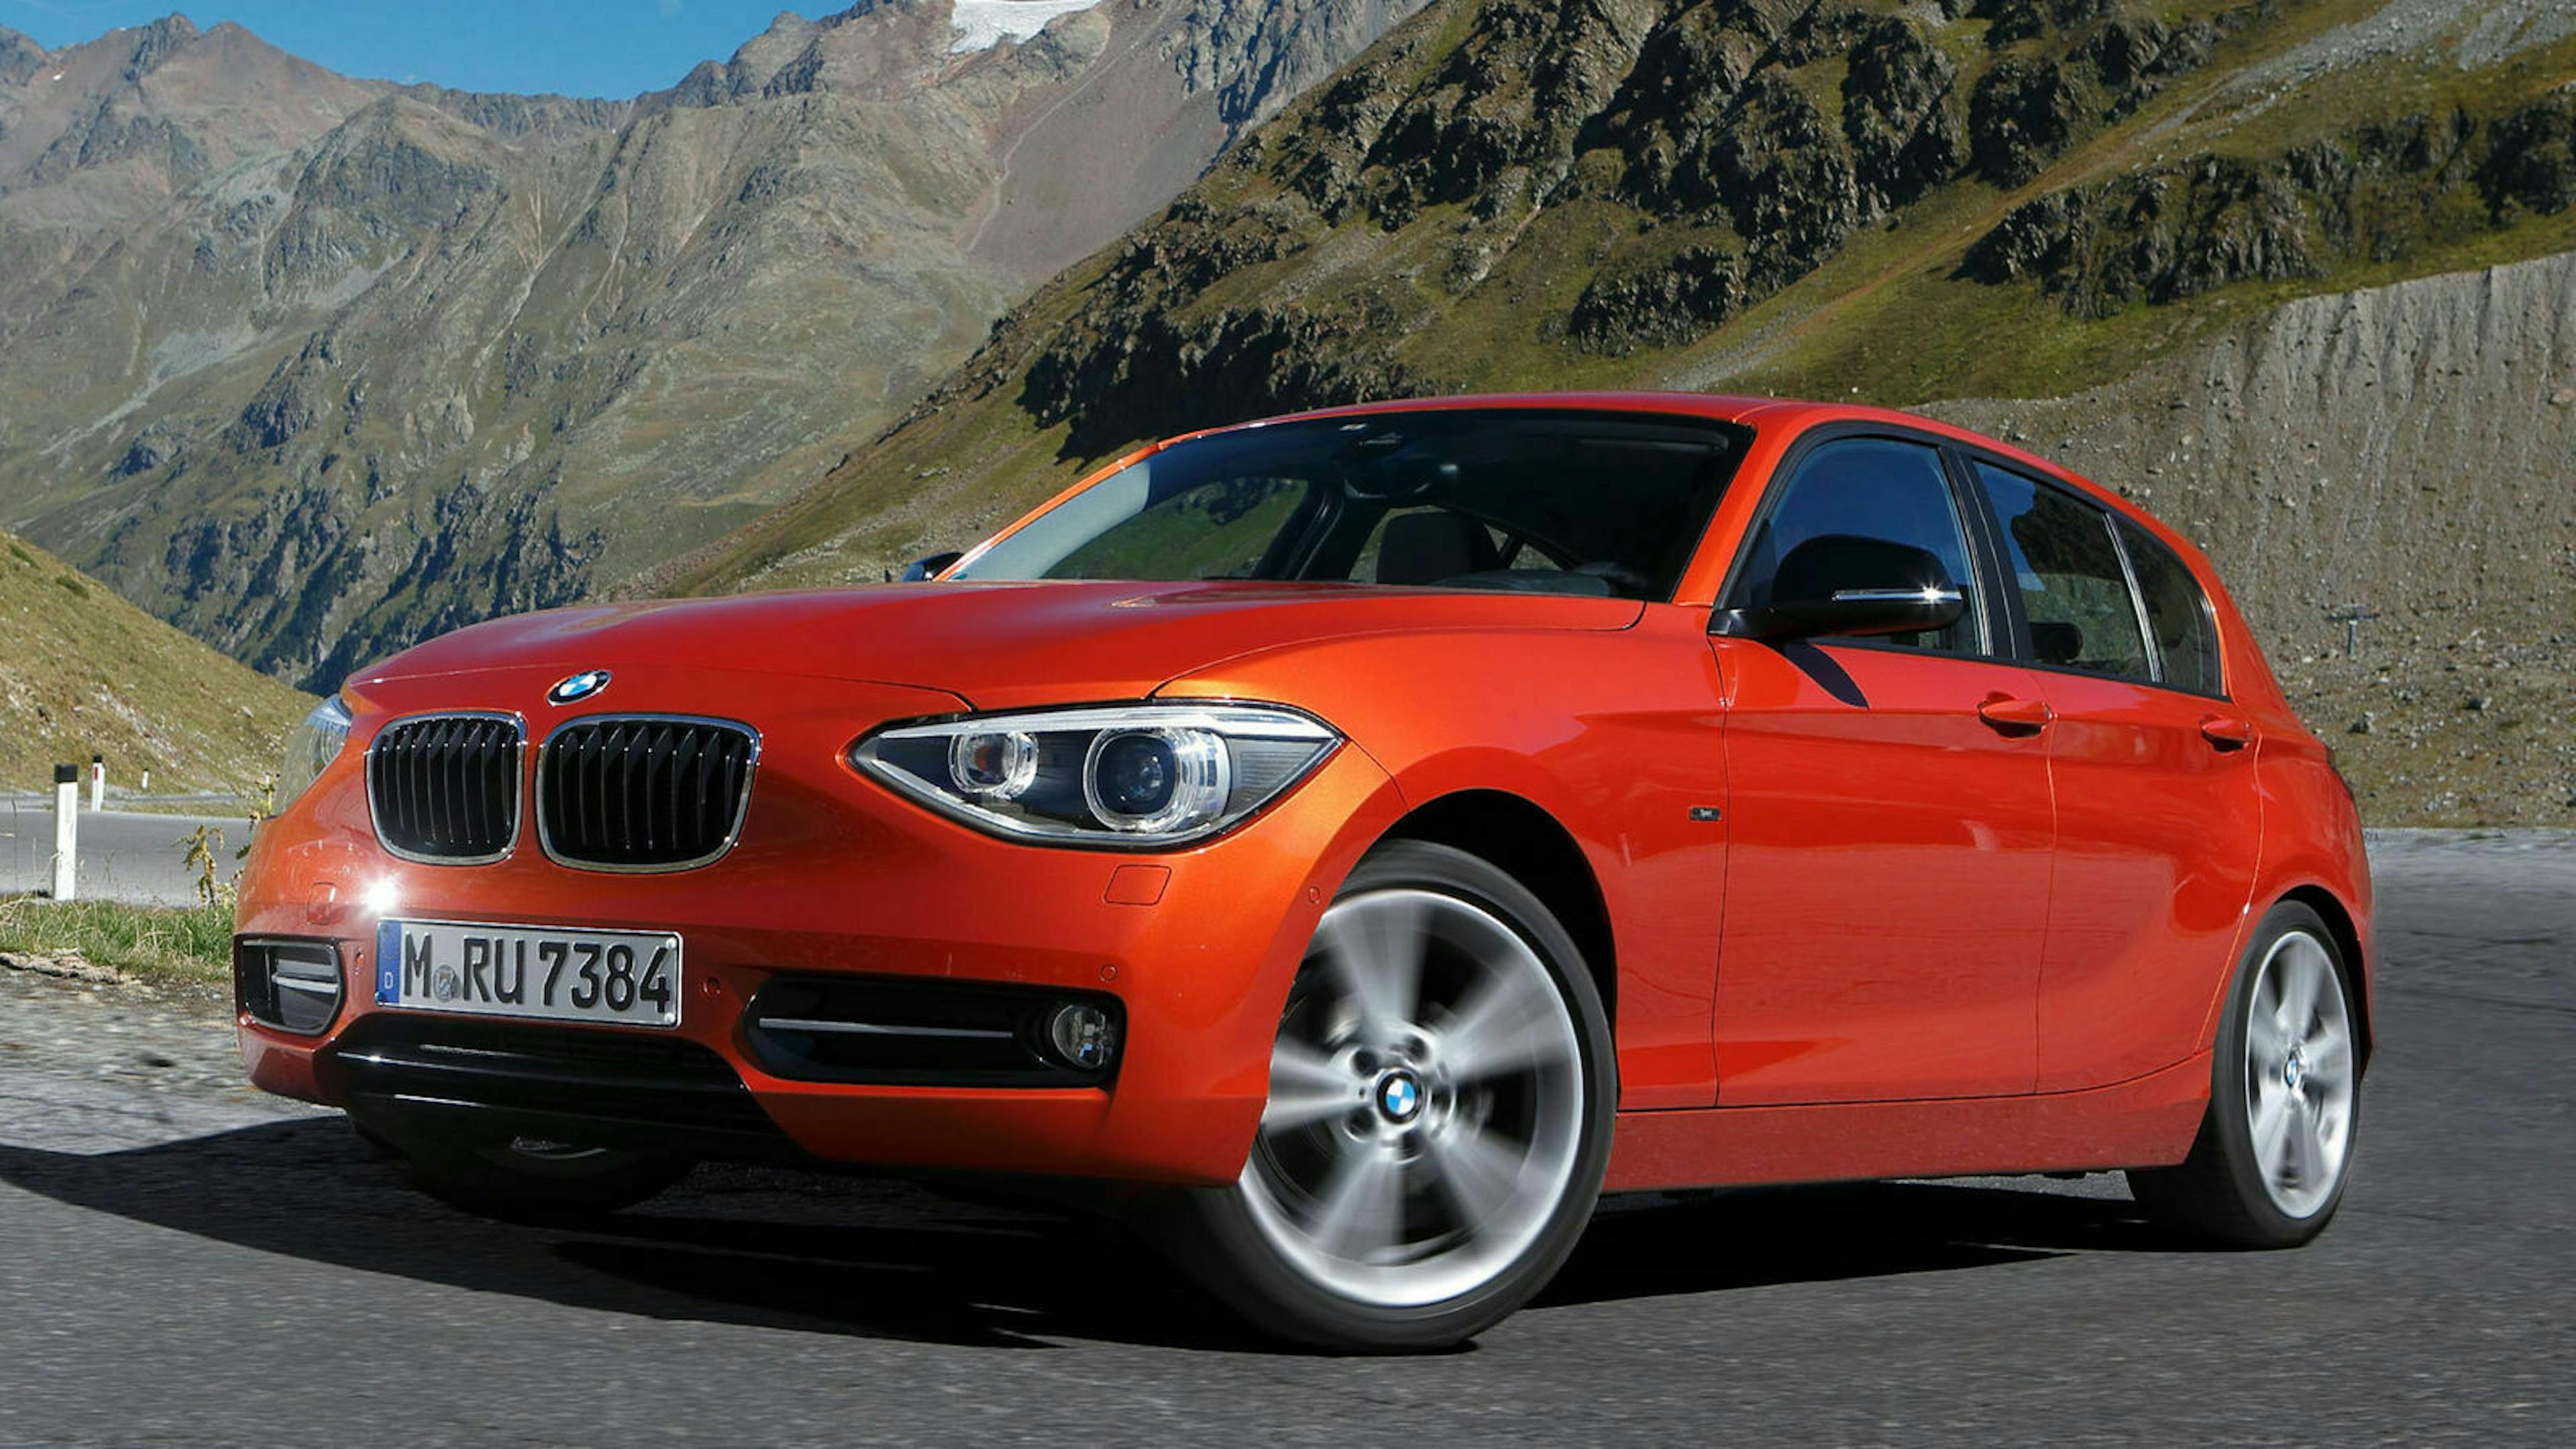 Ein roter BMW 1er mit Heckantrieb steht auf einer Straße vor einem Bergpanorama